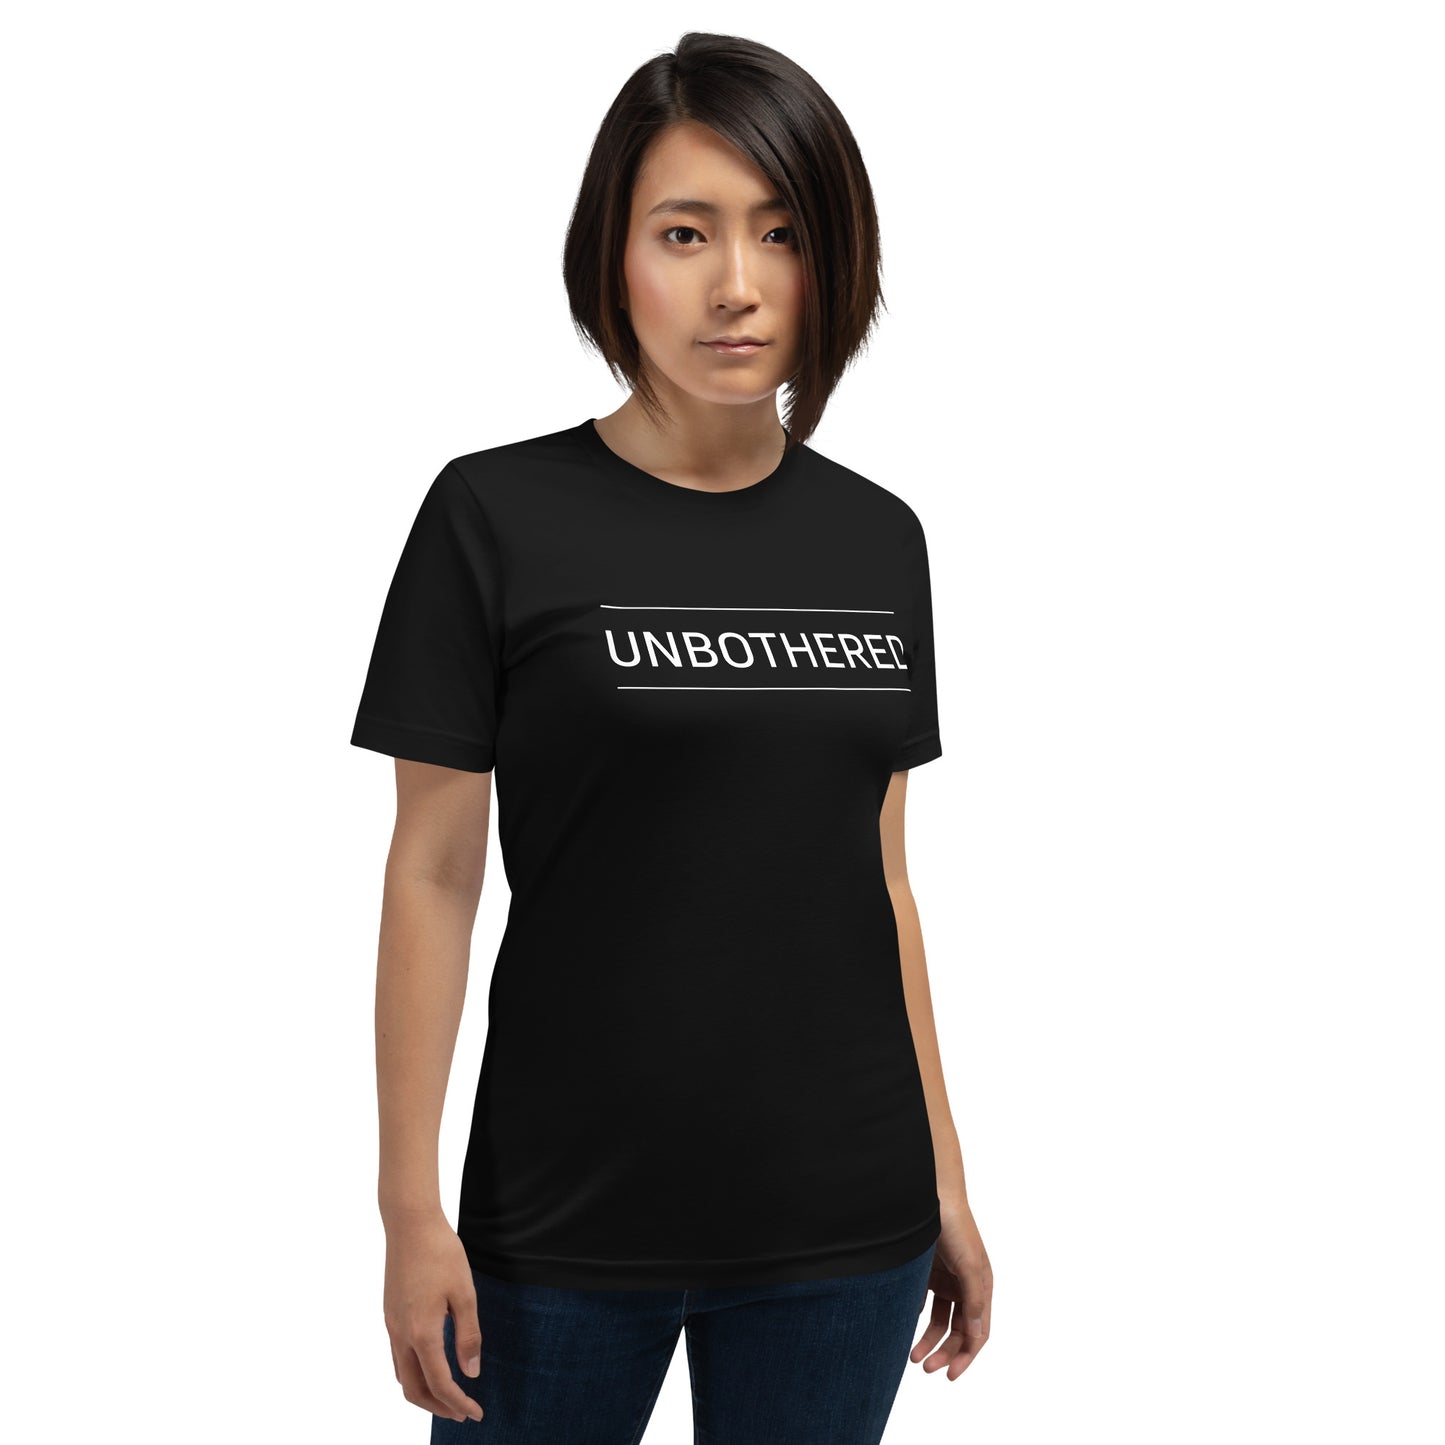 Unbothered Unisex T-shirt